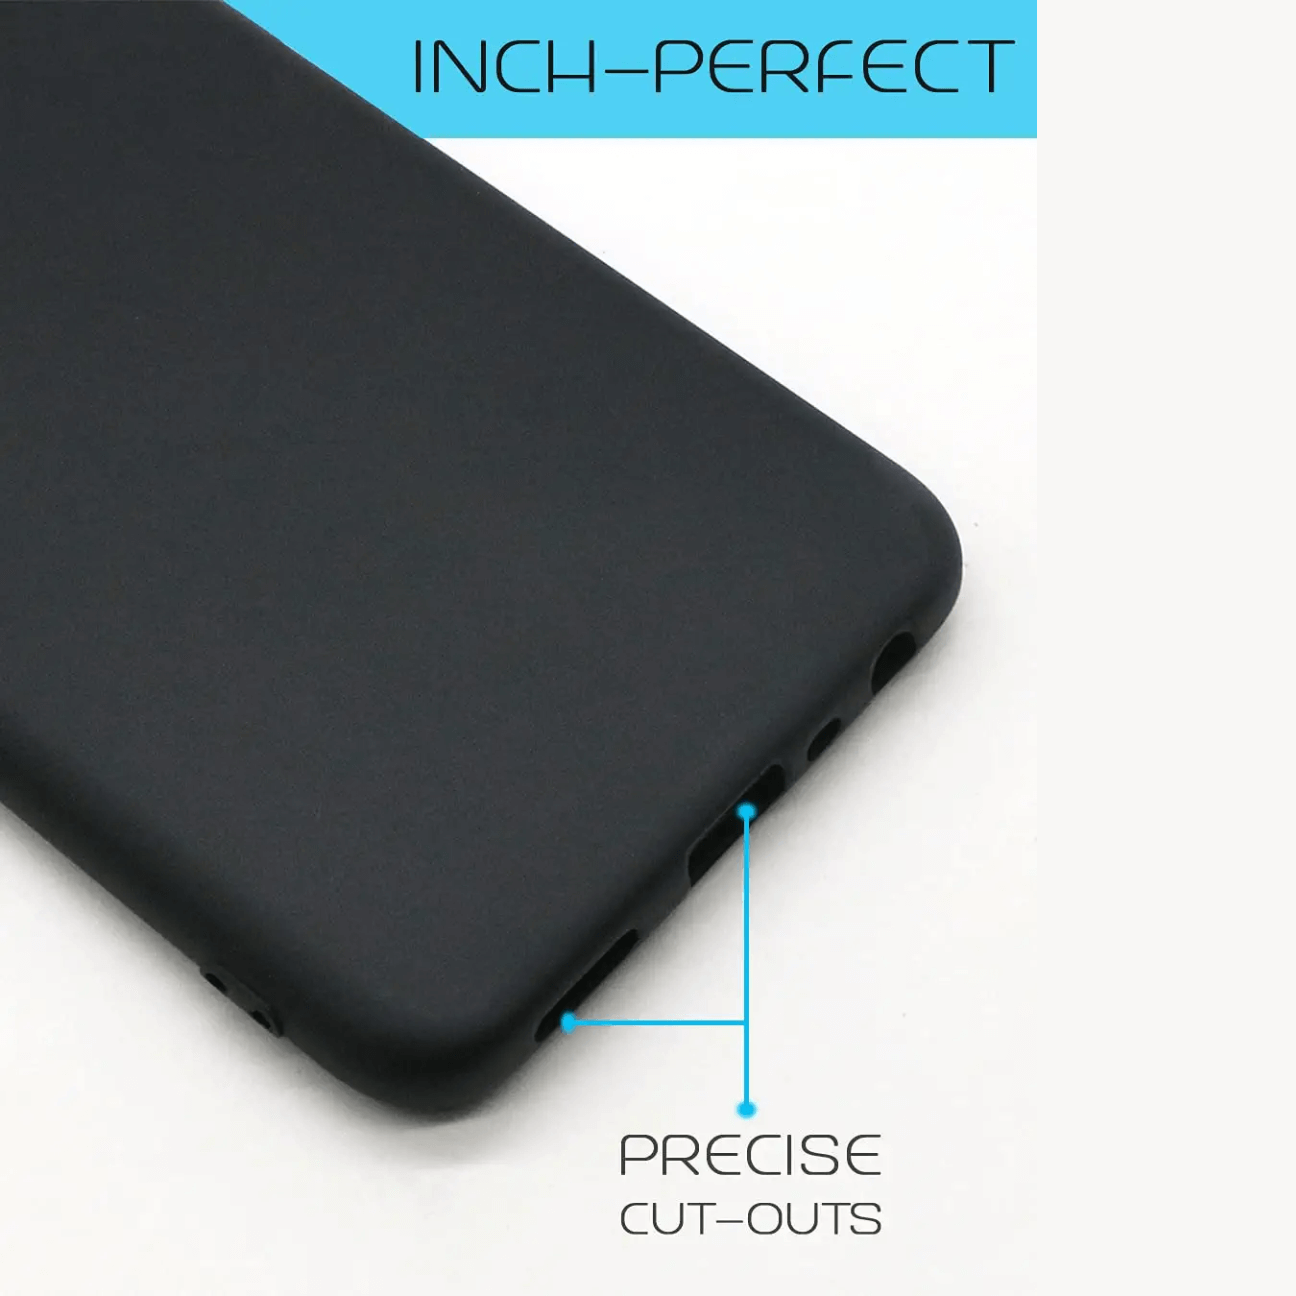 Xiaomi Redmi Note 3 Black Soft Silicone Phone Case Image